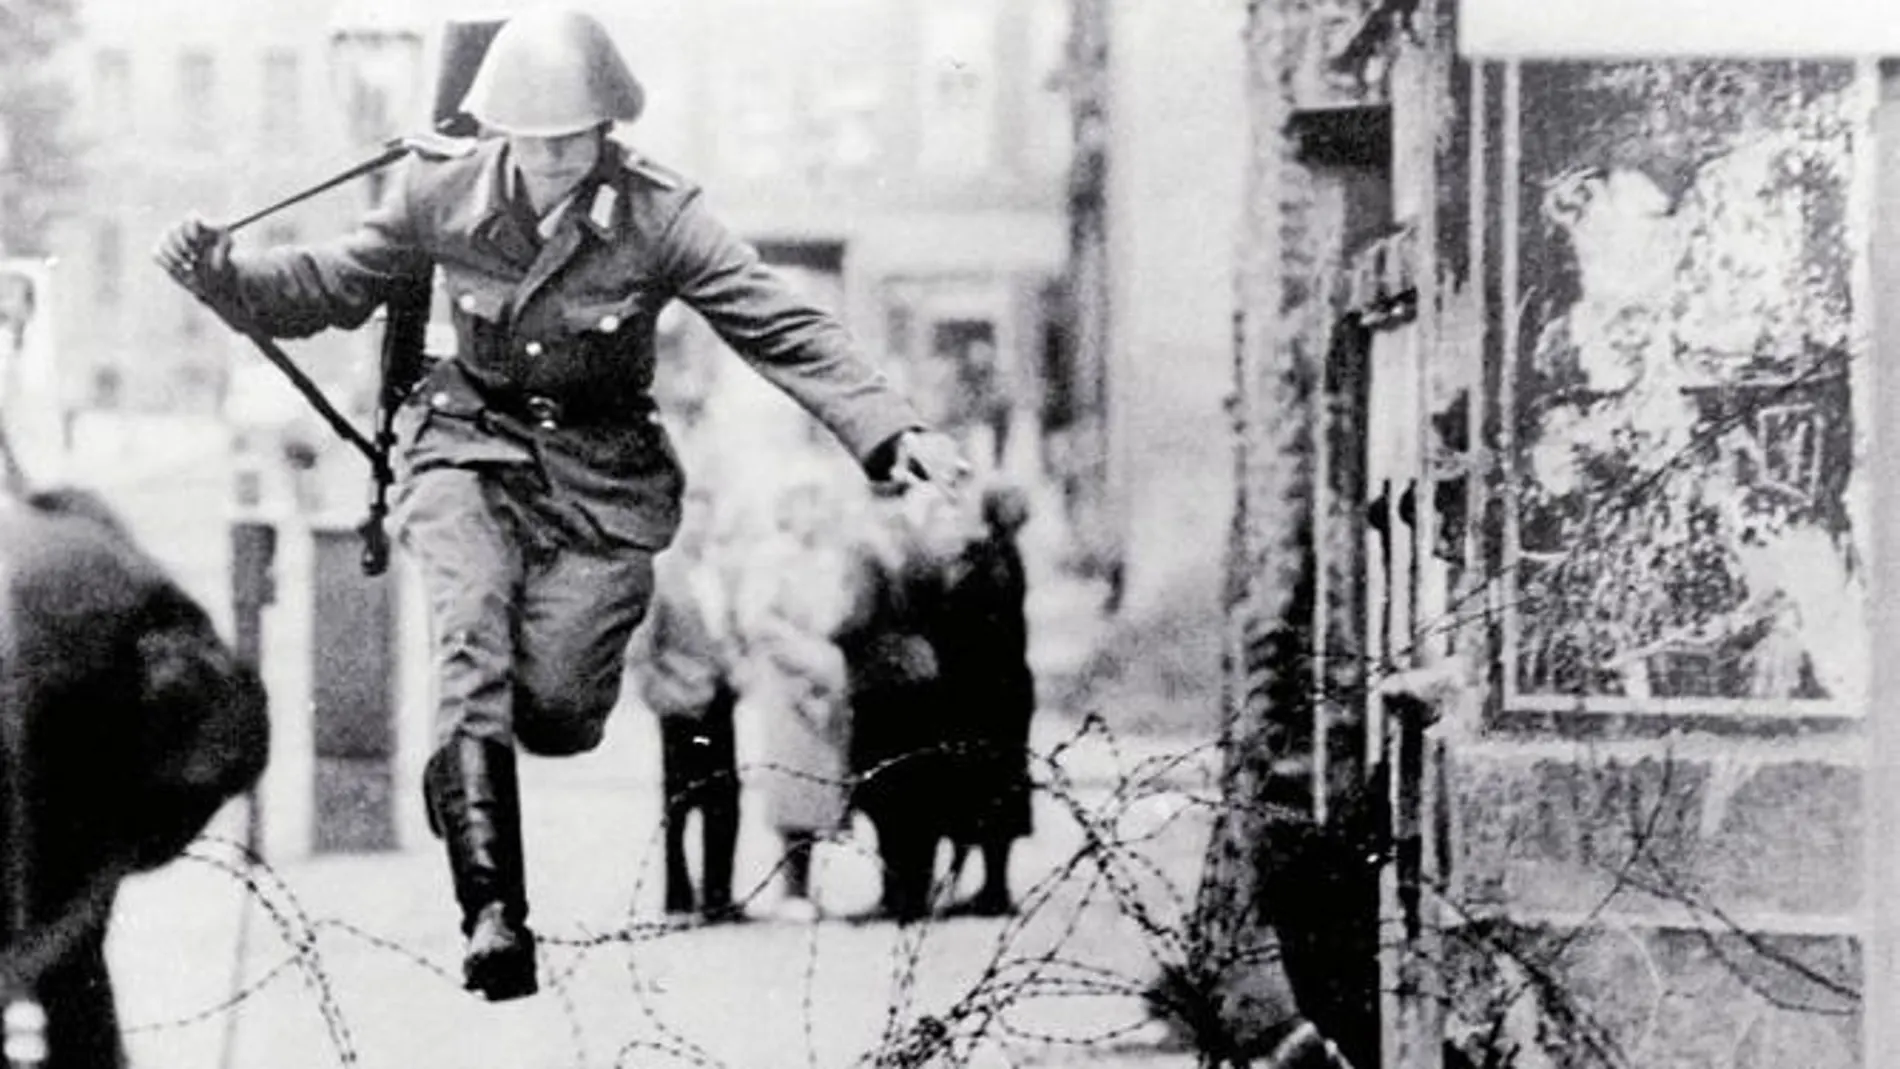 Alemania'61 el riesgo era el muro